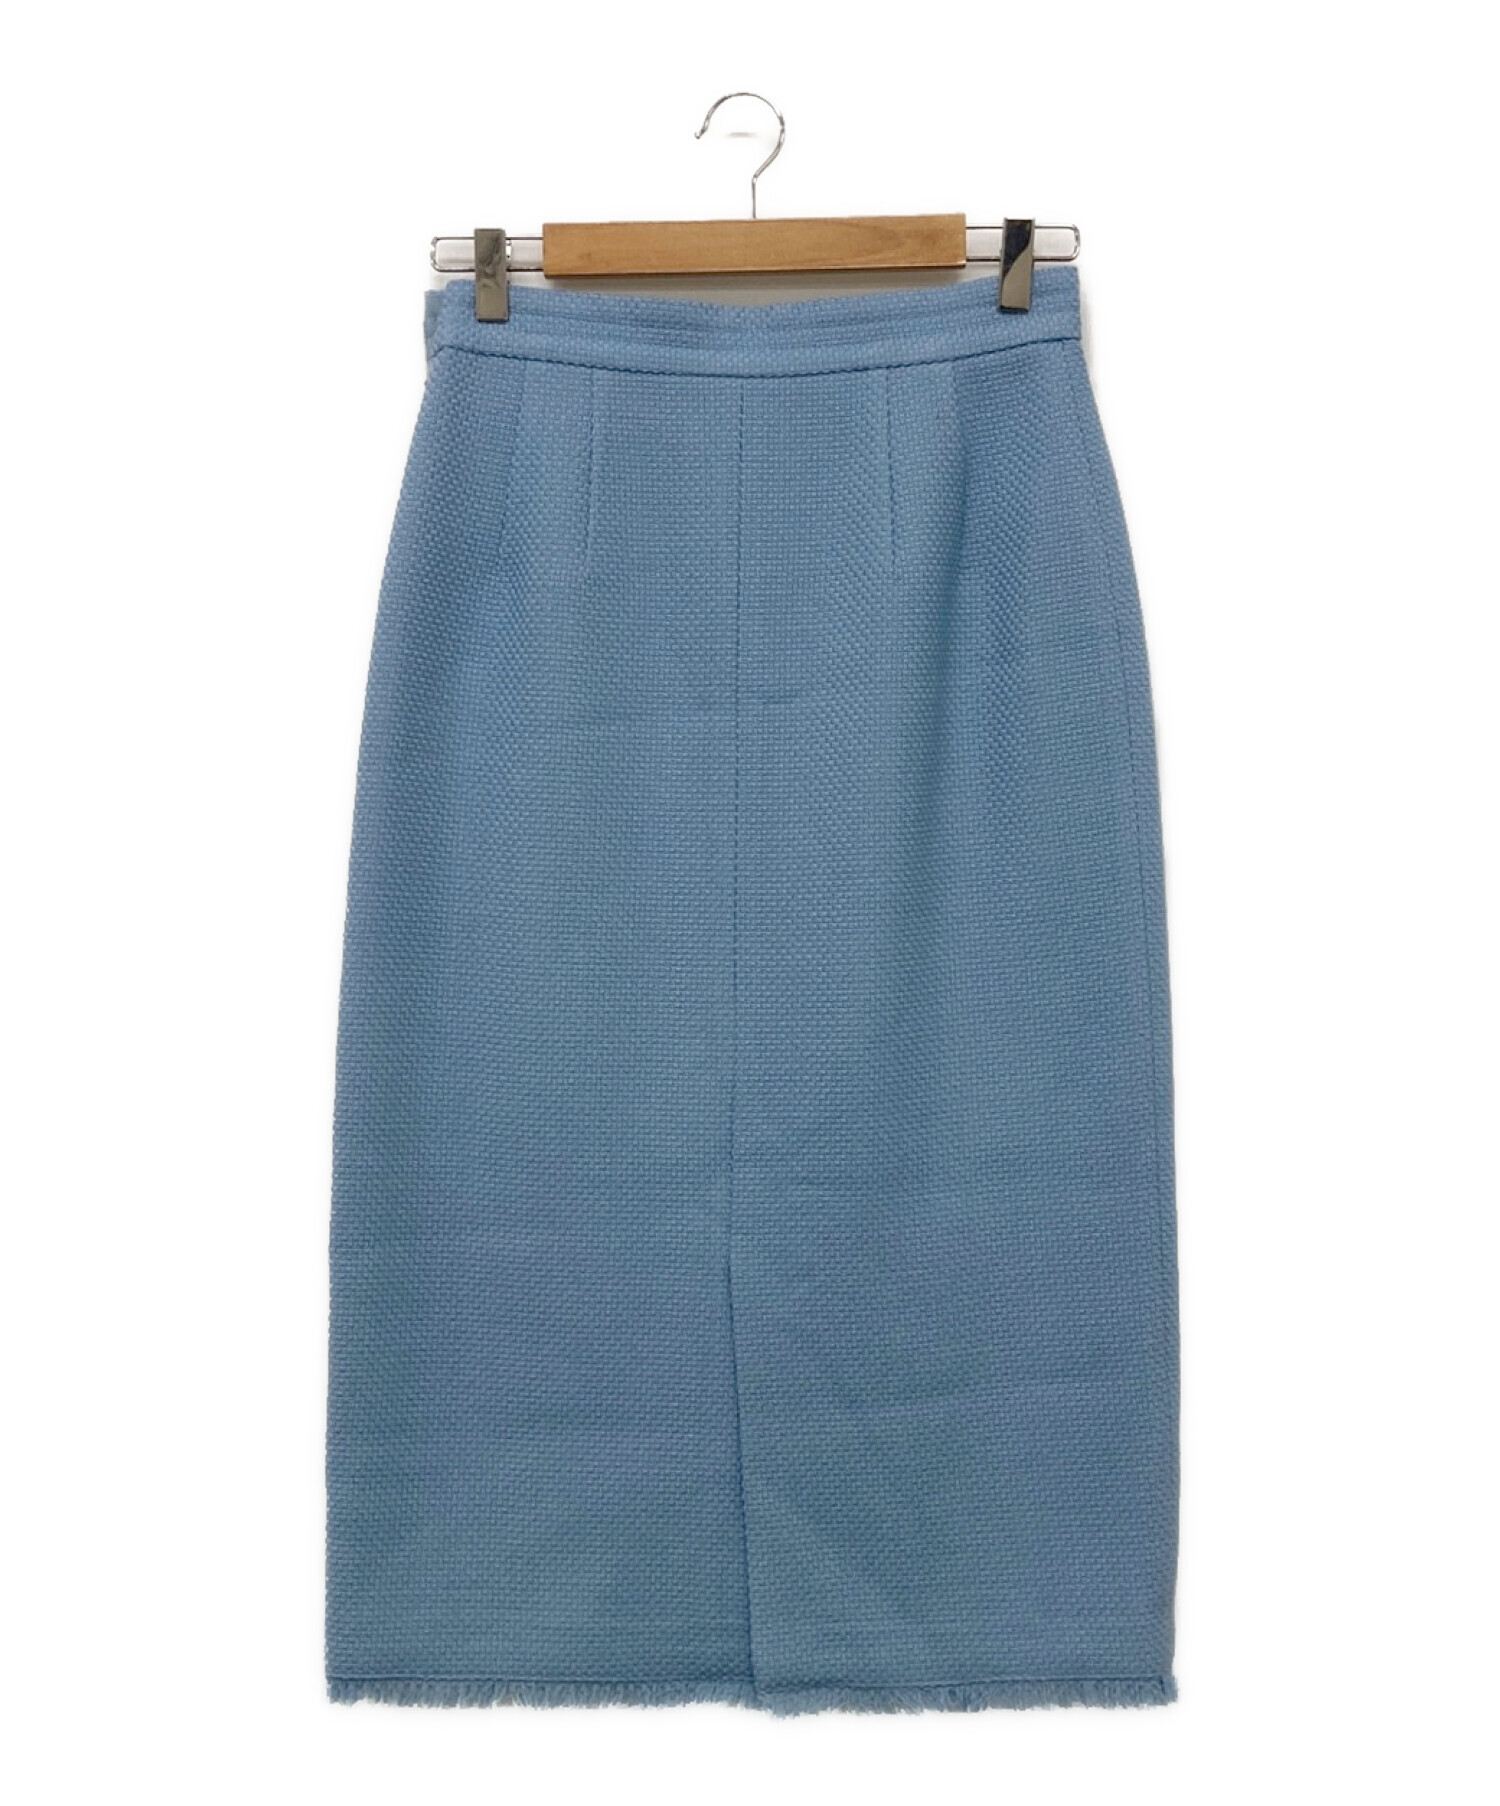 ANAYI (アナイ) ウールプリペラタイト スカート ライトブルー サイズ:38